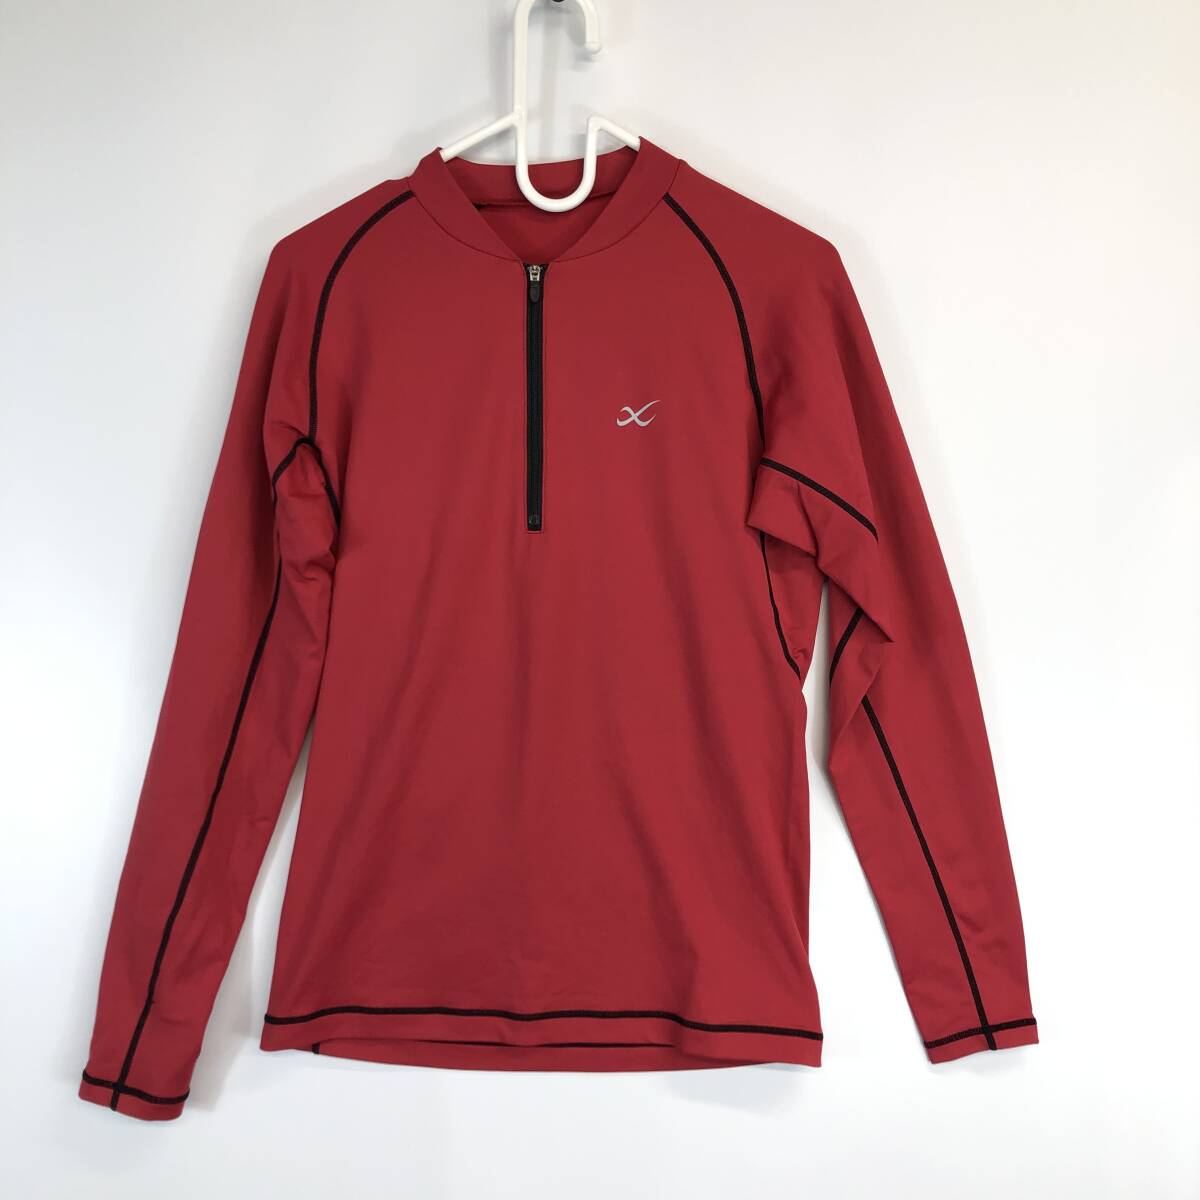  Wacoal WACOAL CW-X половина Zip рубашка красный обратная сторона ворсистый HUO-510 M размер мужской 165-175